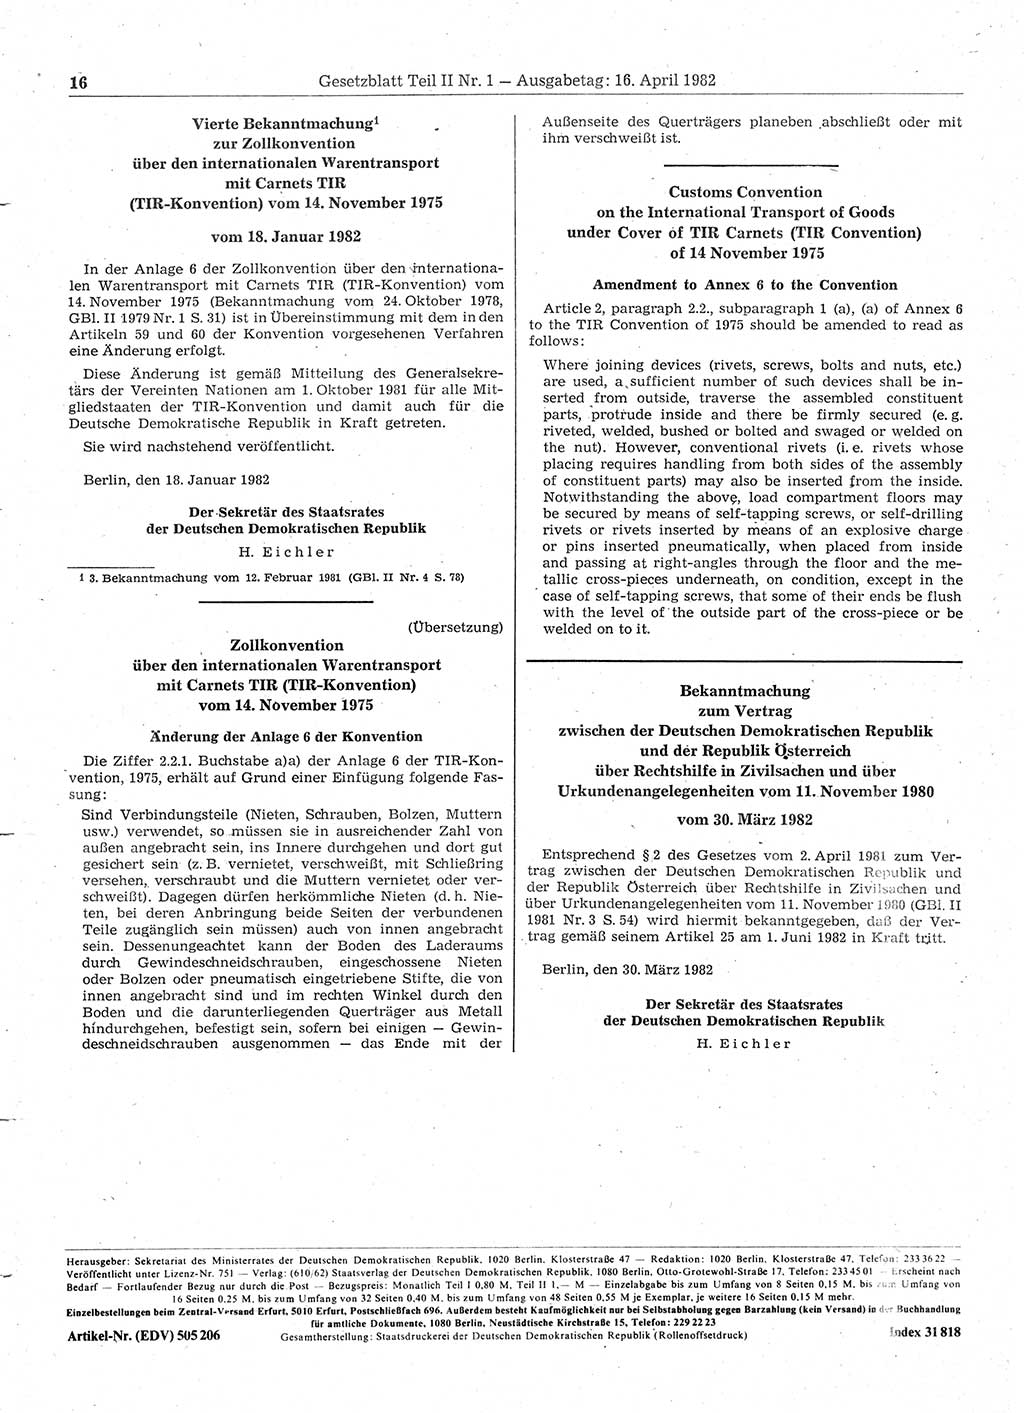 Gesetzblatt (GBl.) der Deutschen Demokratischen Republik (DDR) Teil ⅠⅠ 1982, Seite 16 (GBl. DDR ⅠⅠ 1982, S. 16)